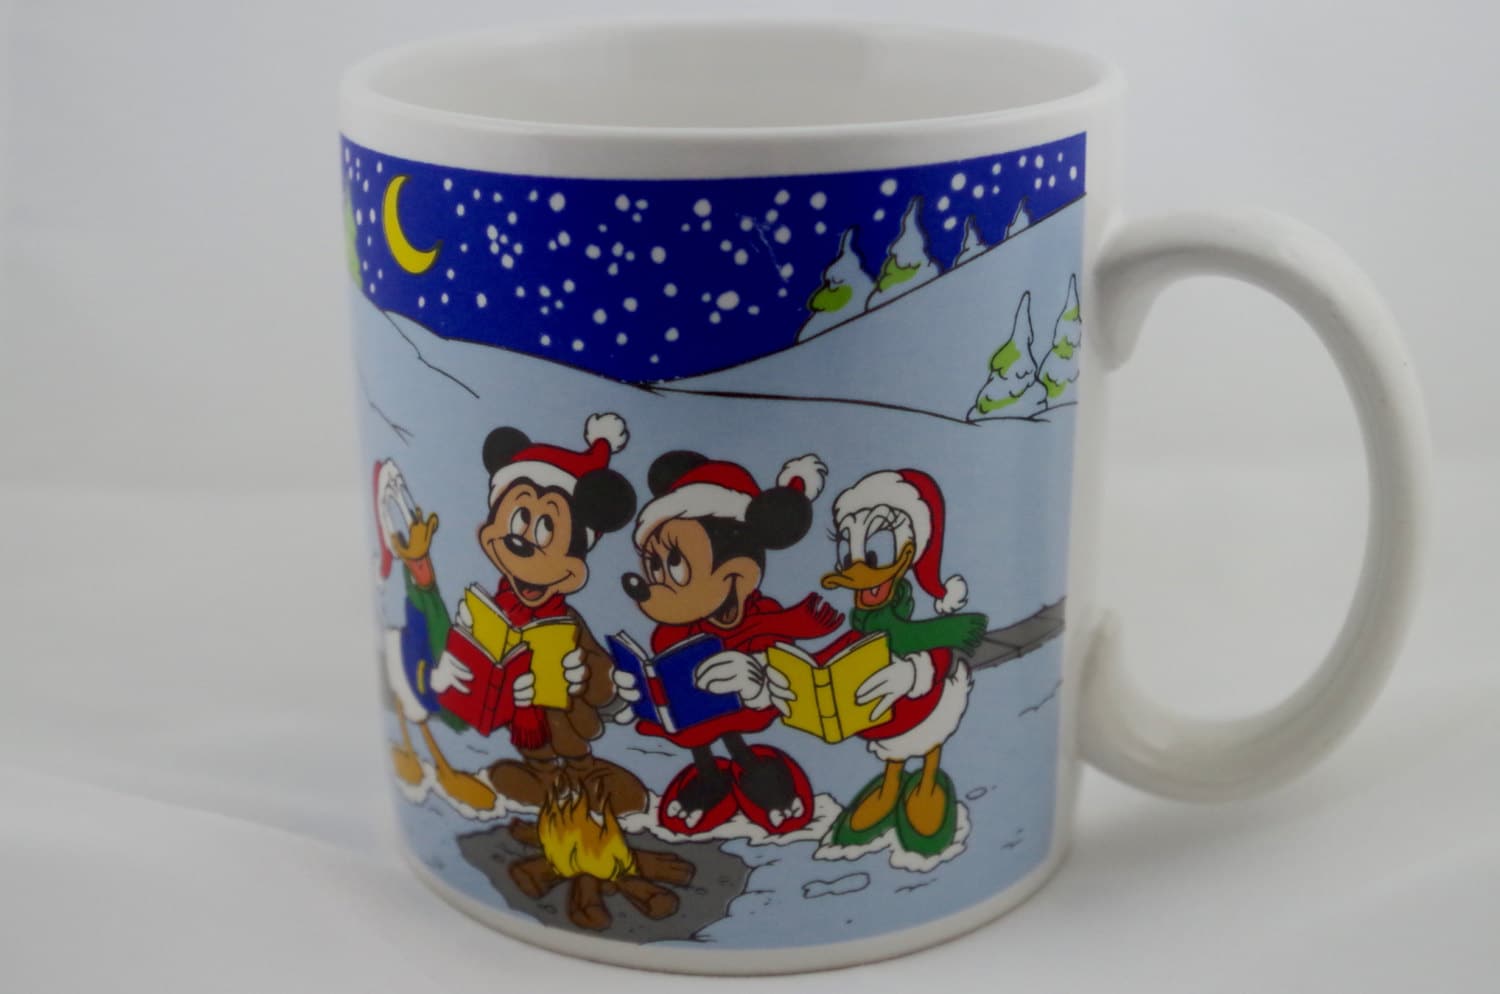 Vintage Disney Christmas Mug Mickey Mouse by